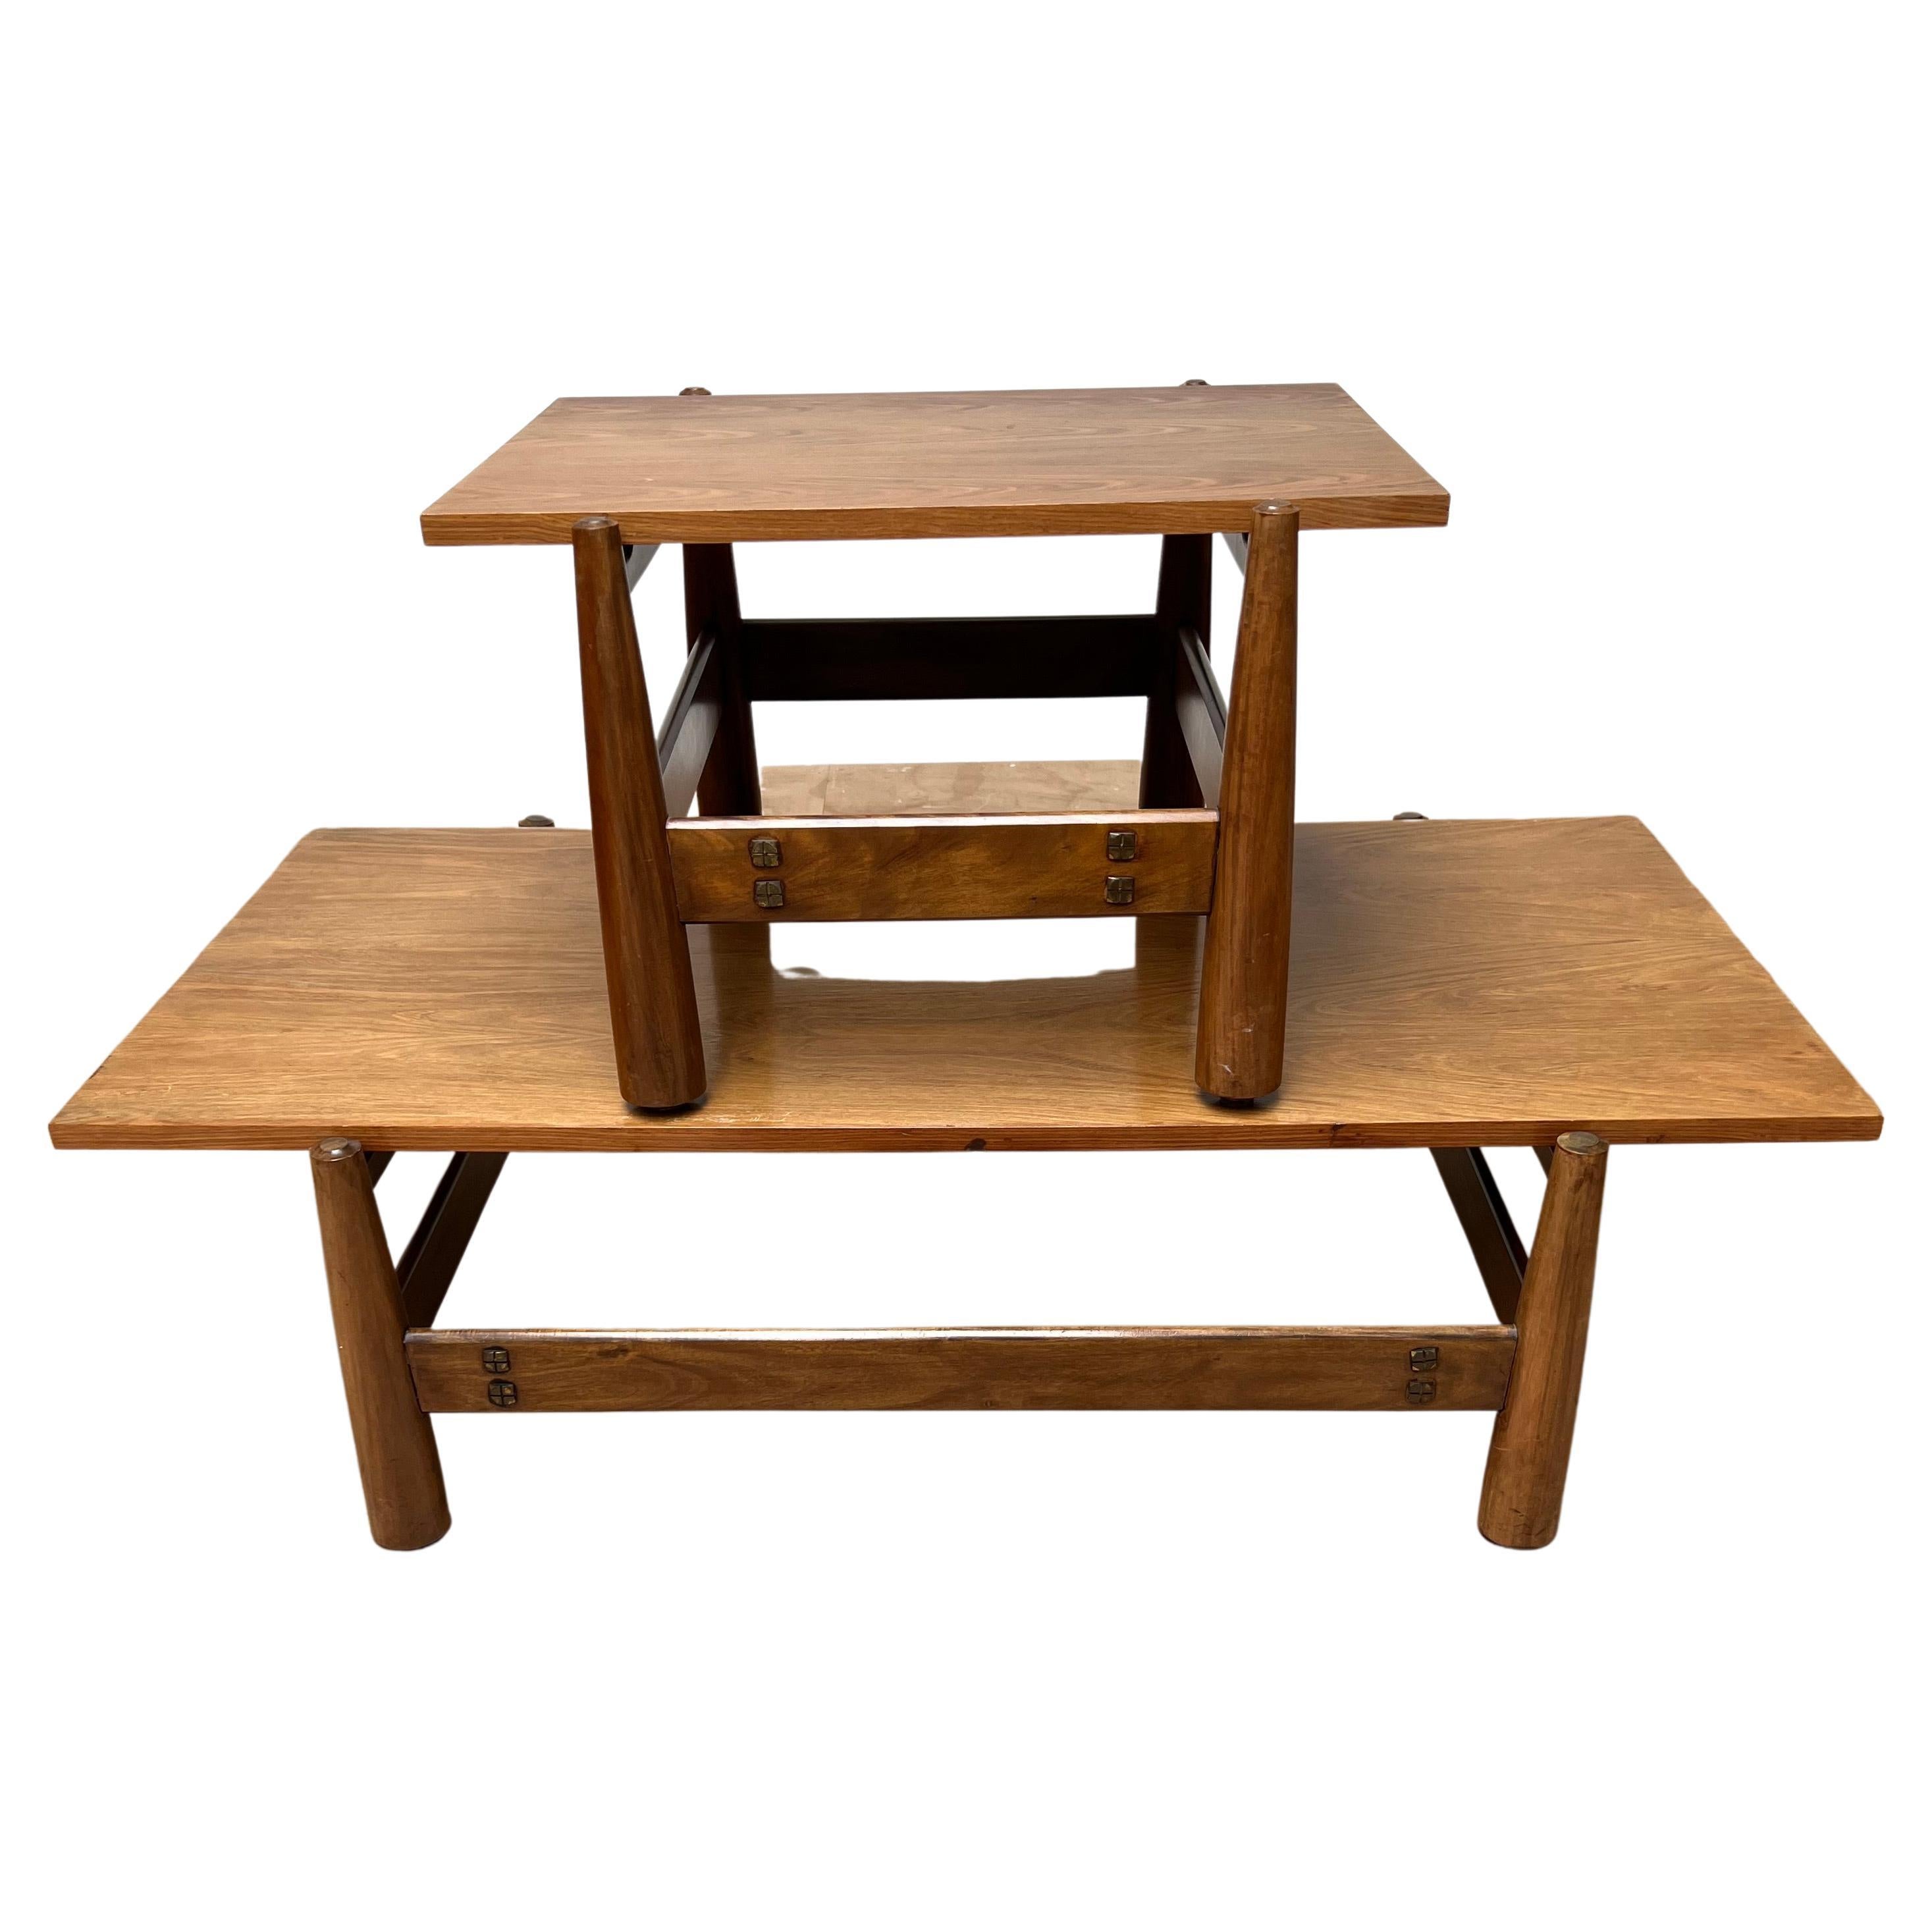 Rare ensemble de tables au design vintage, marquées, par Móveis Cimo.

Ces tables très élégantes et recherchées ont été fabriquées dans les années 1960 par la société brésilienne Móveis Cimo, pionnière dans la fabrication de meubles brésiliens.